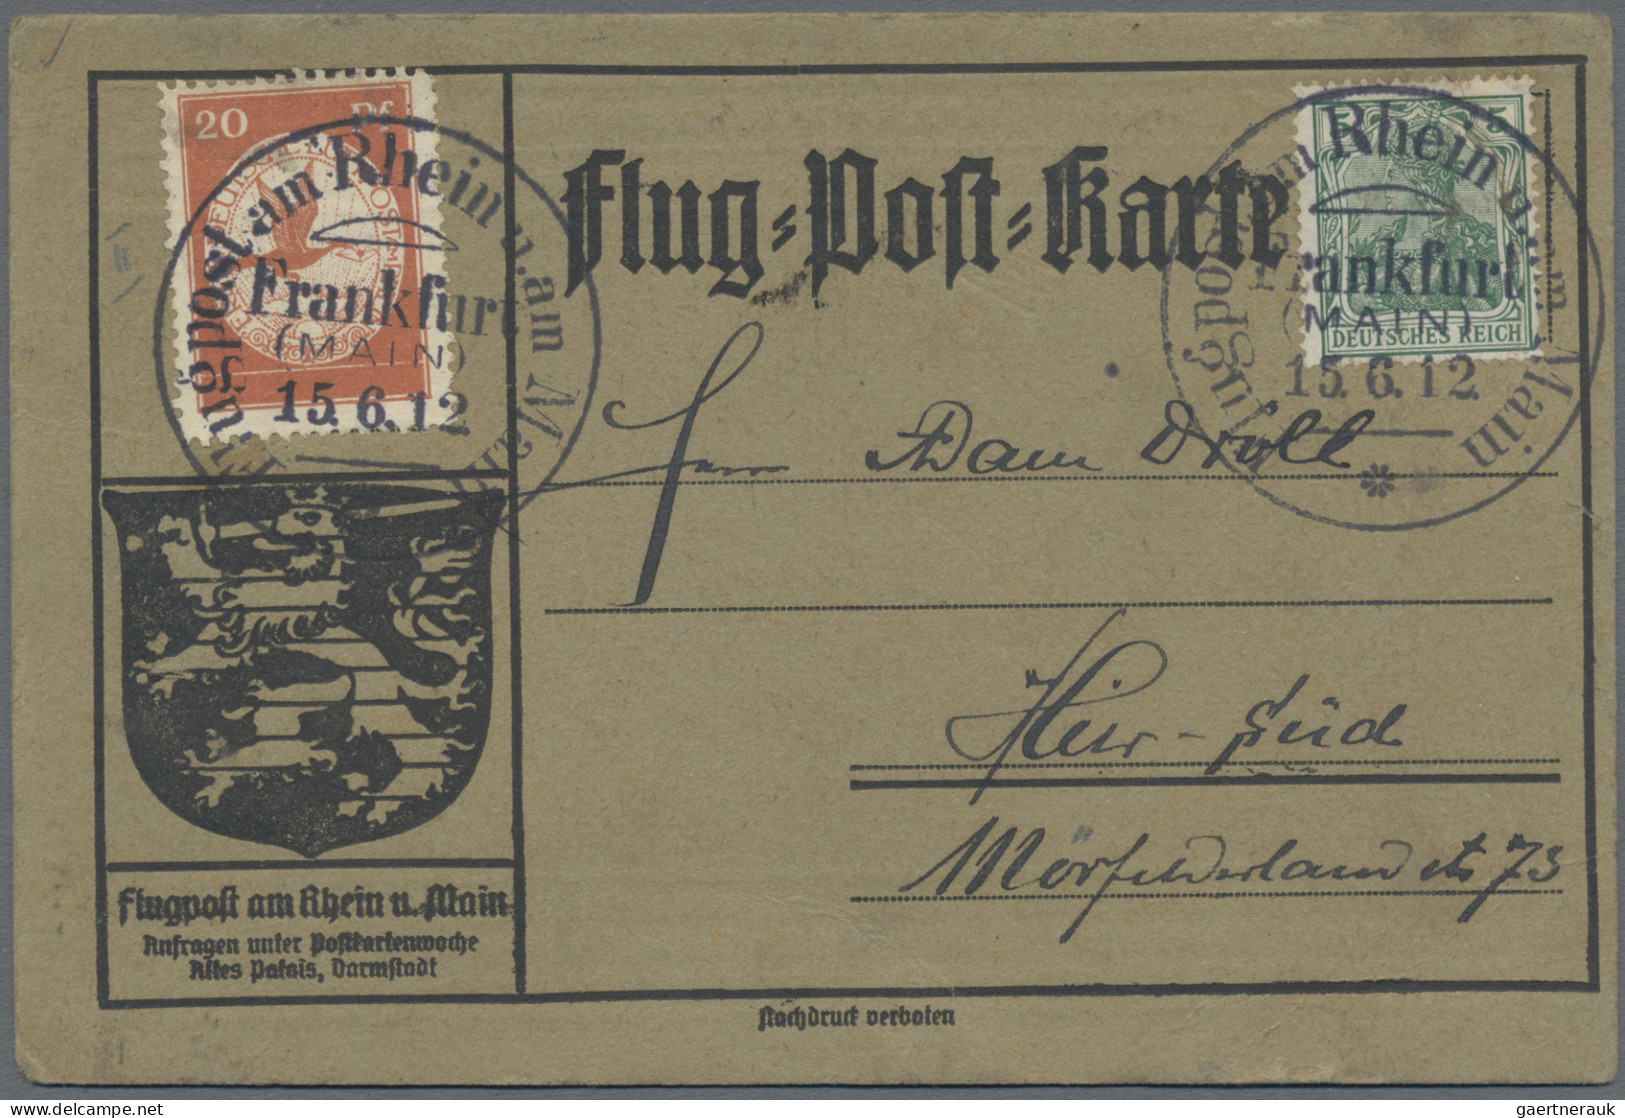 Deutschland: 1910/1949 (ca), Album mit rund 325 Belegen, fast alles interessante